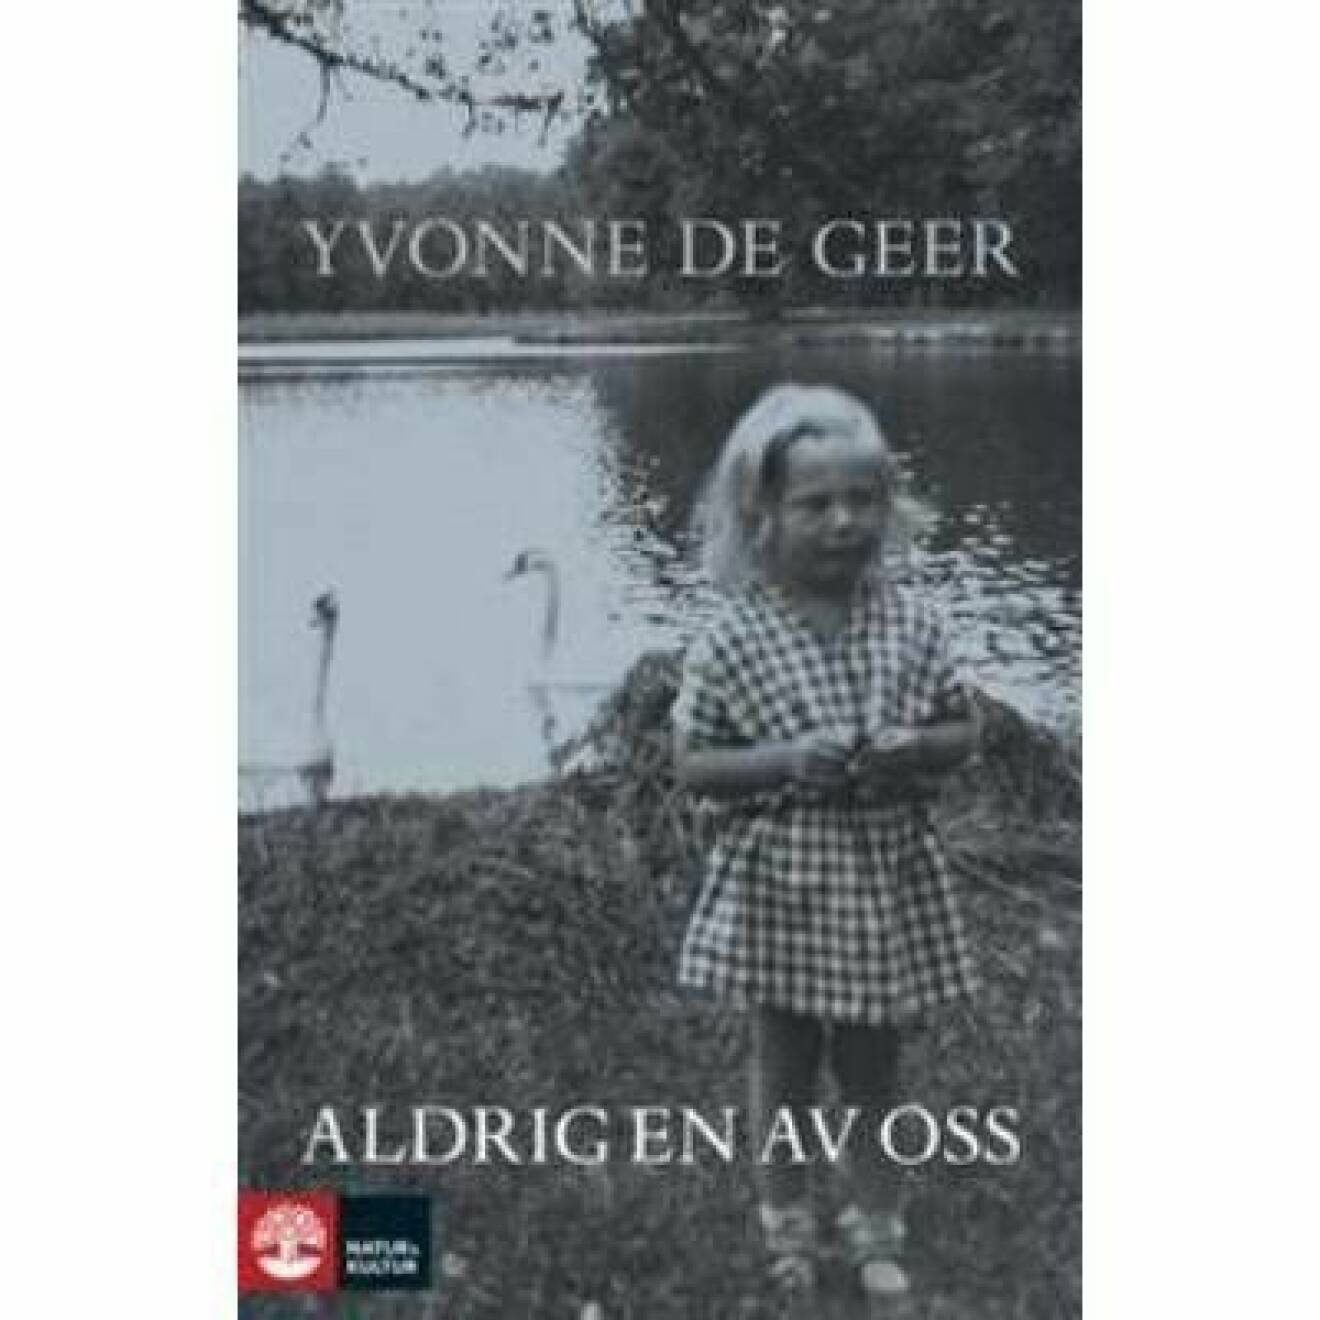 Yvonne De Geers bok ”Aldrig en av oss”